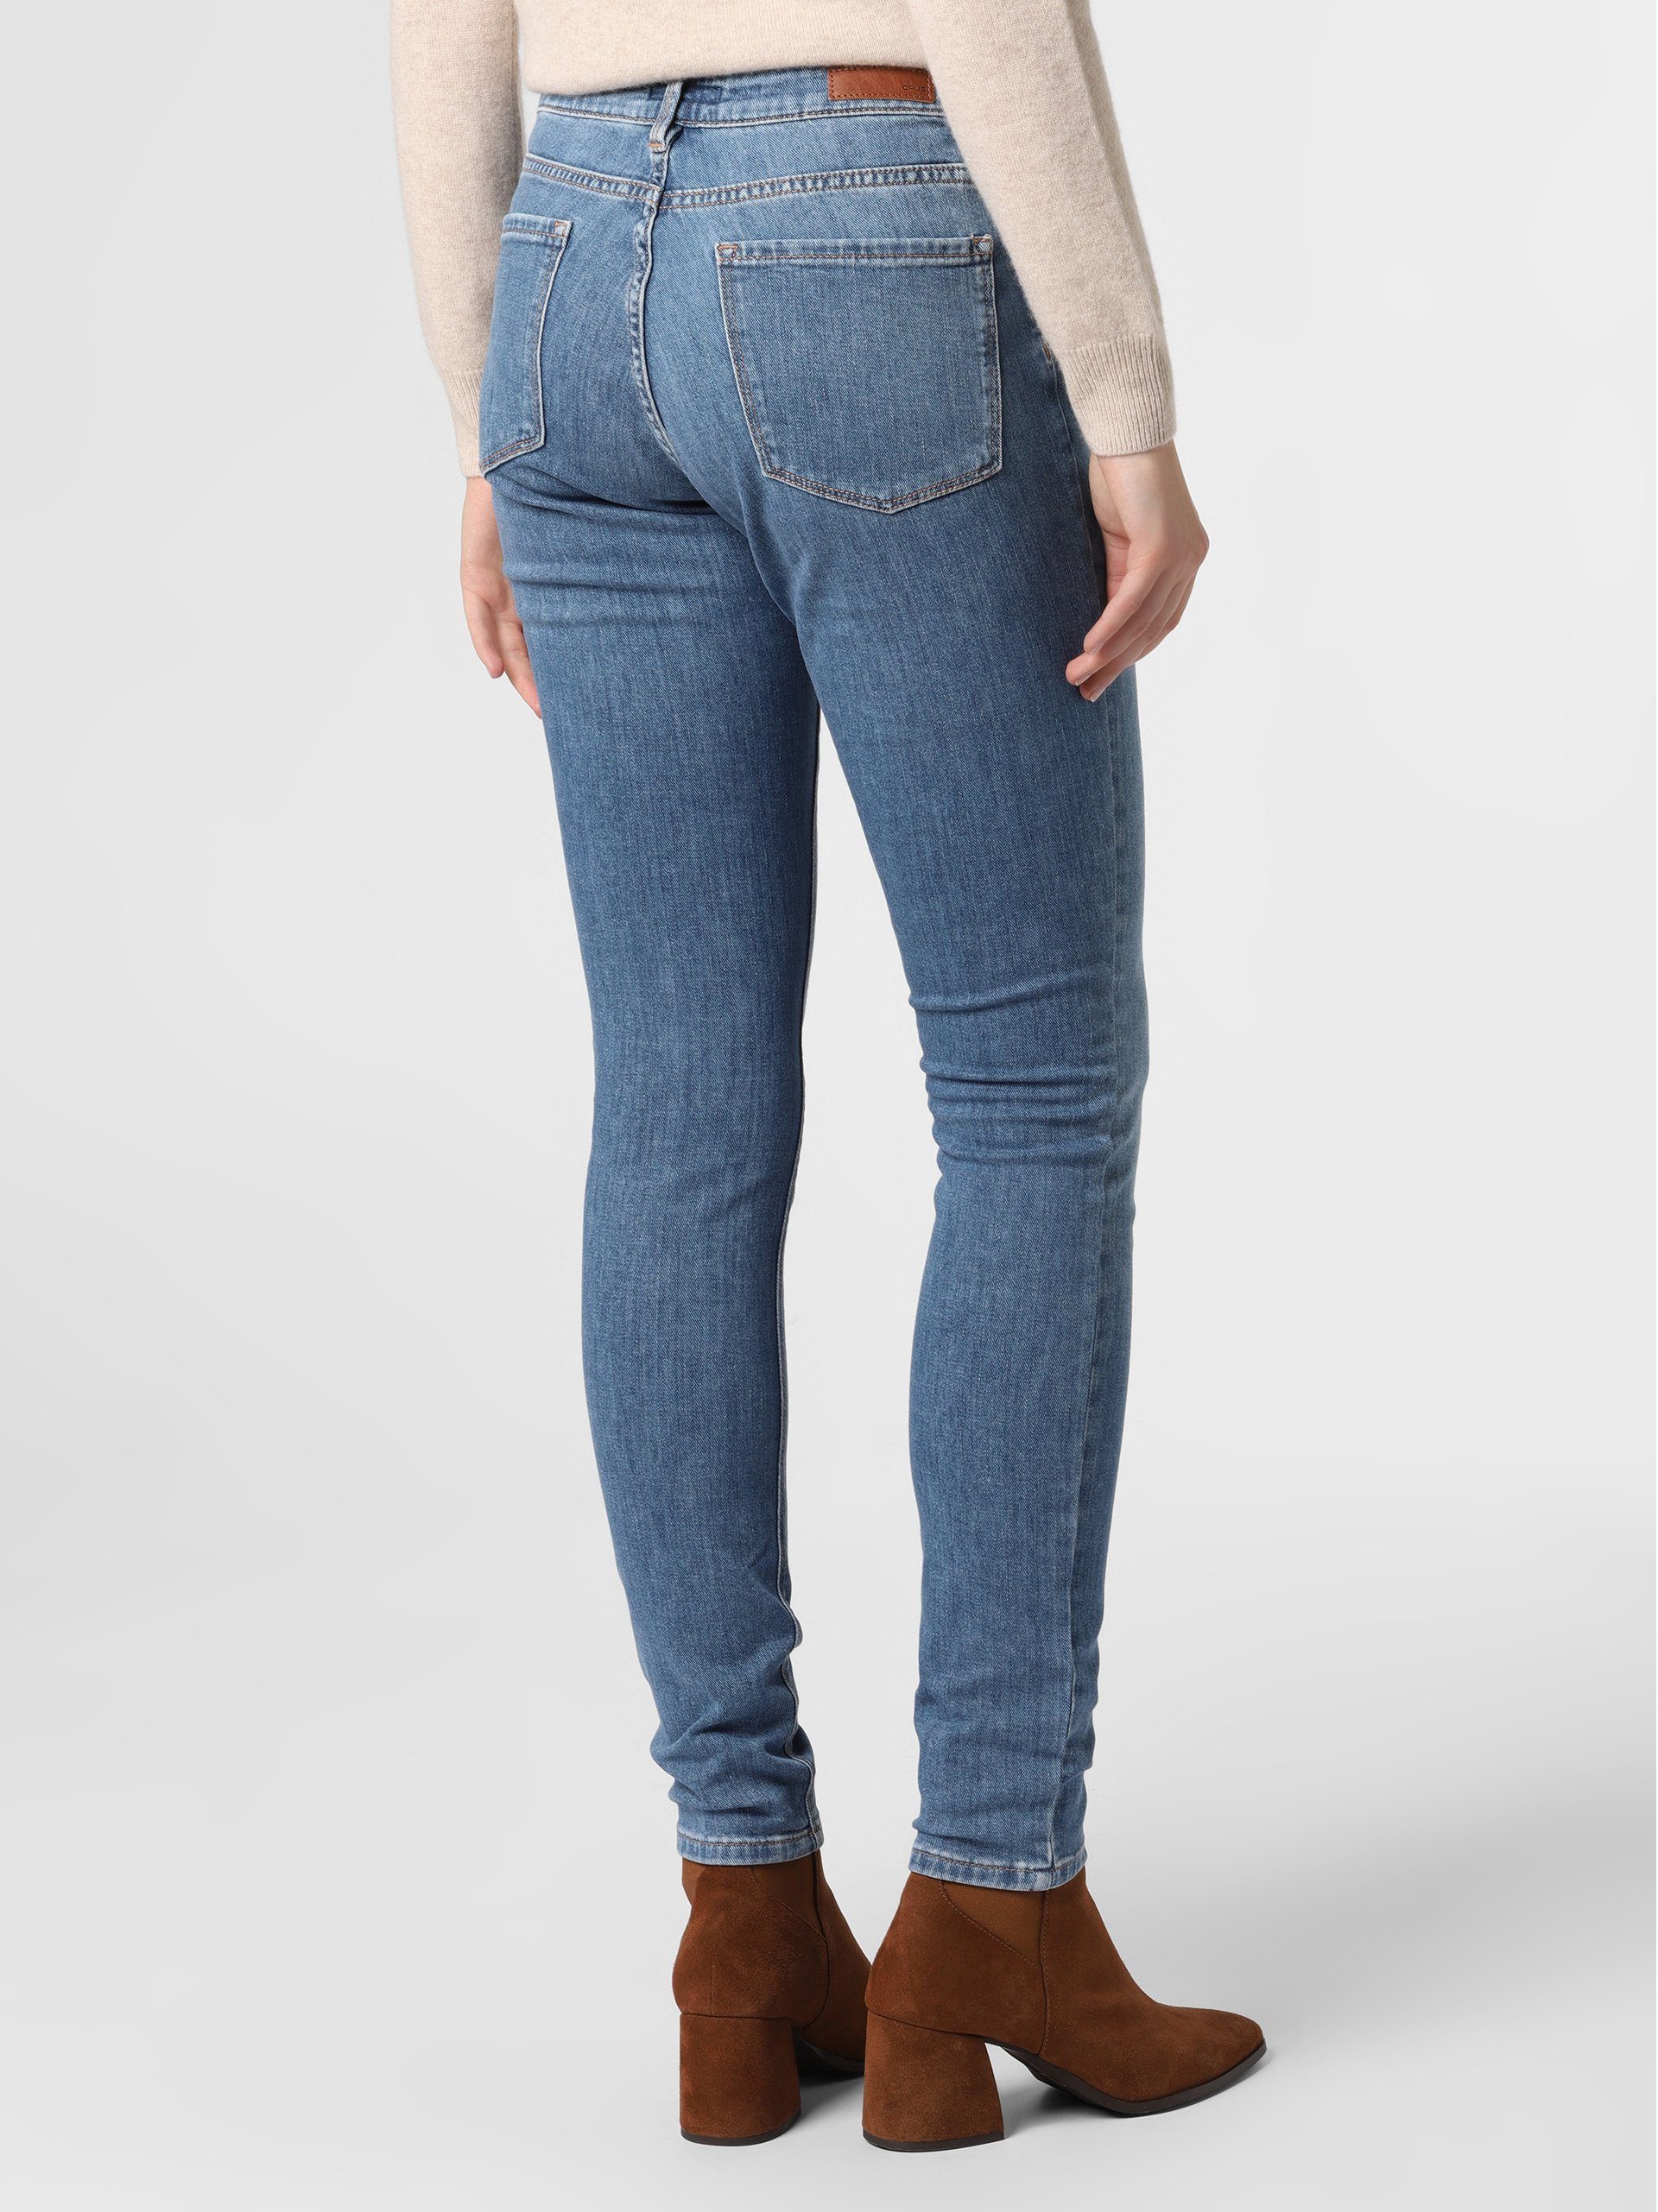 Elma OPUS Skinny-fit-Jeans